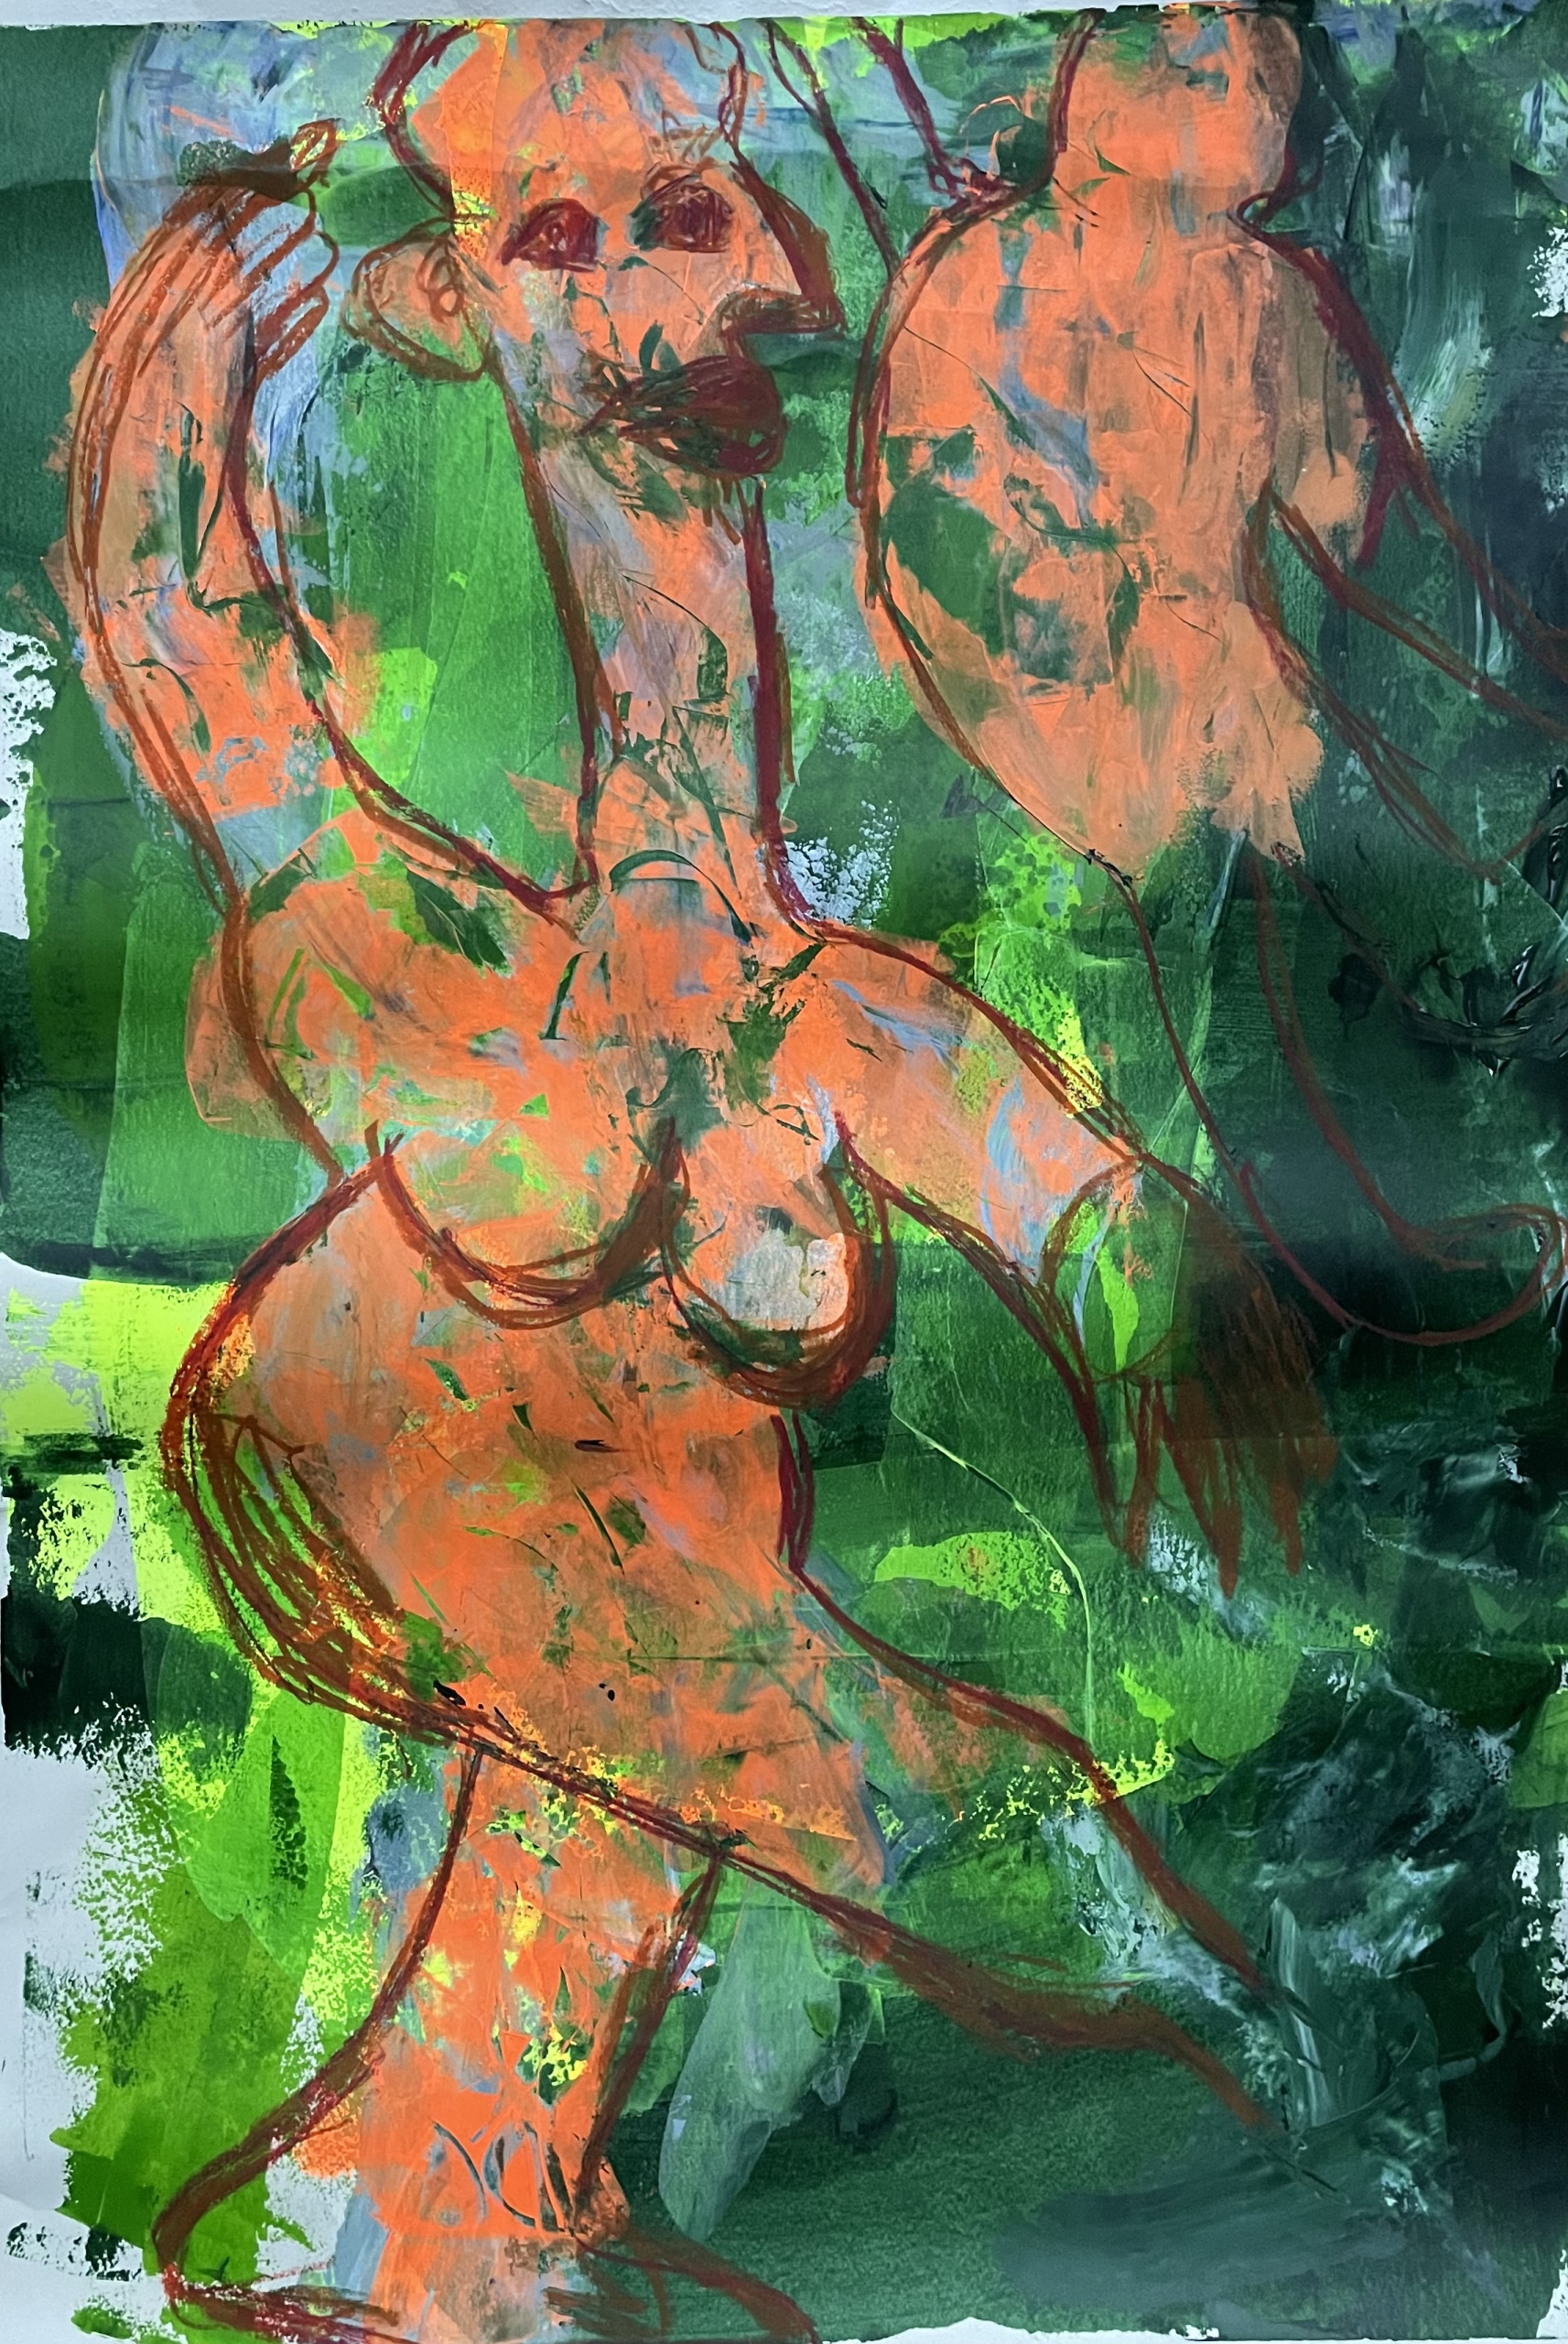 Sylvia Gatz "Jungle Dance" Acryl auf Leinwand. 70 x 100 cm, 2020